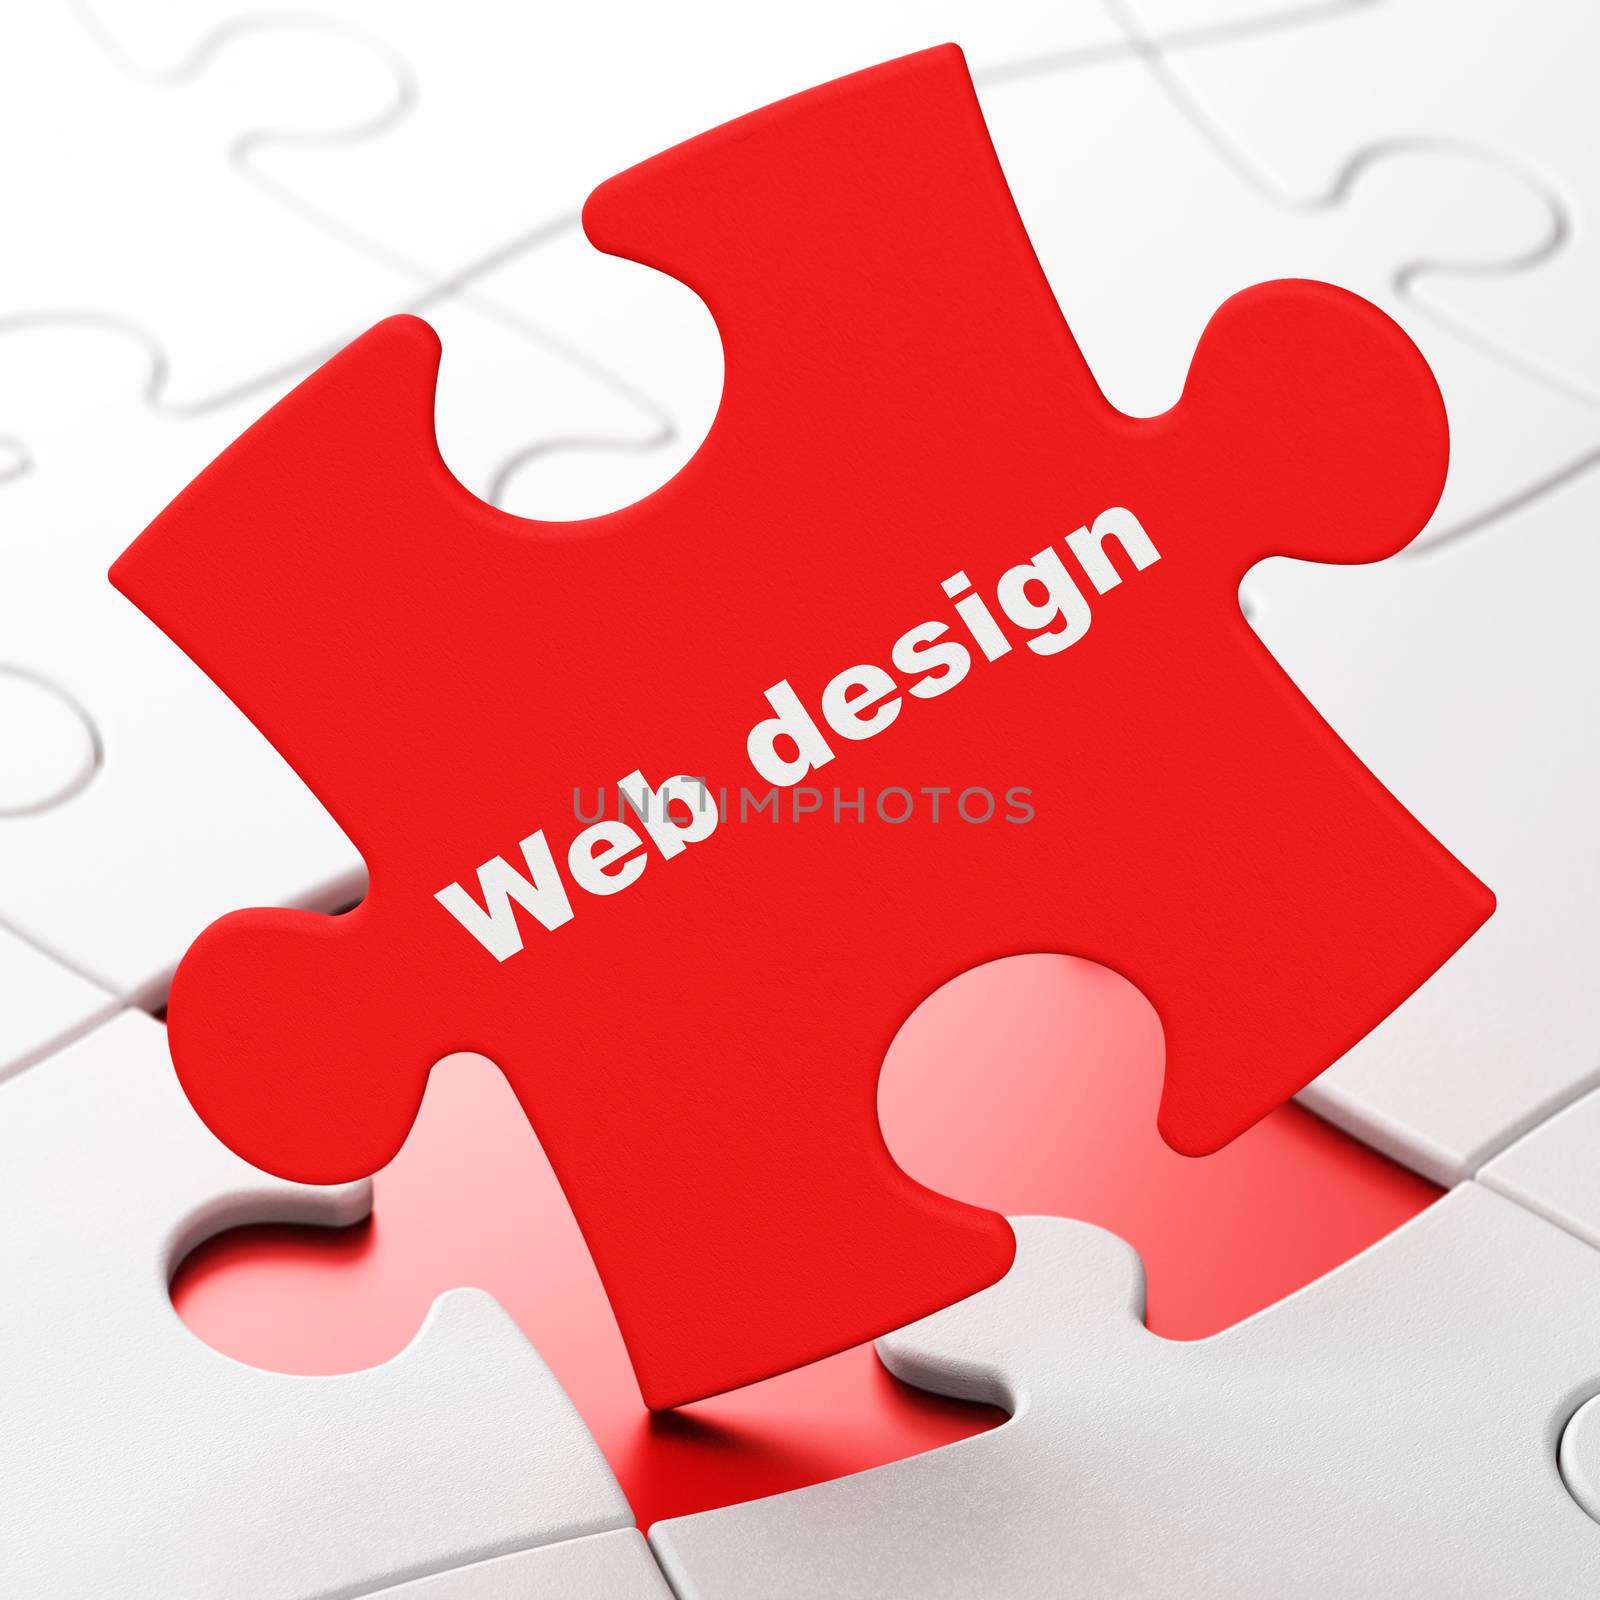 Web development concept: Web Design on Red puzzle pieces background, 3d render